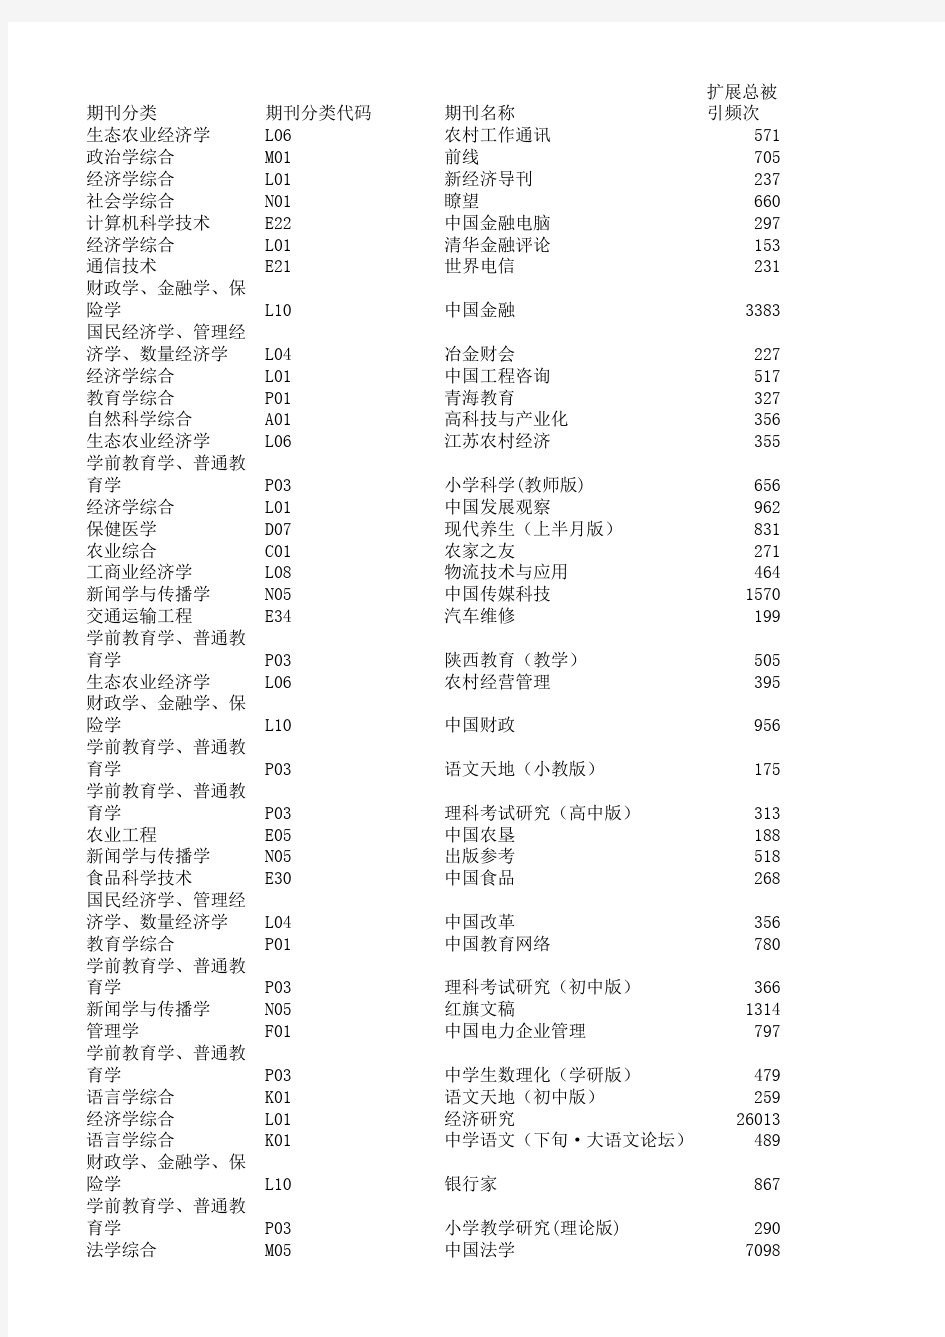 2017版中国科技期刊引证报告(扩展版)资料版